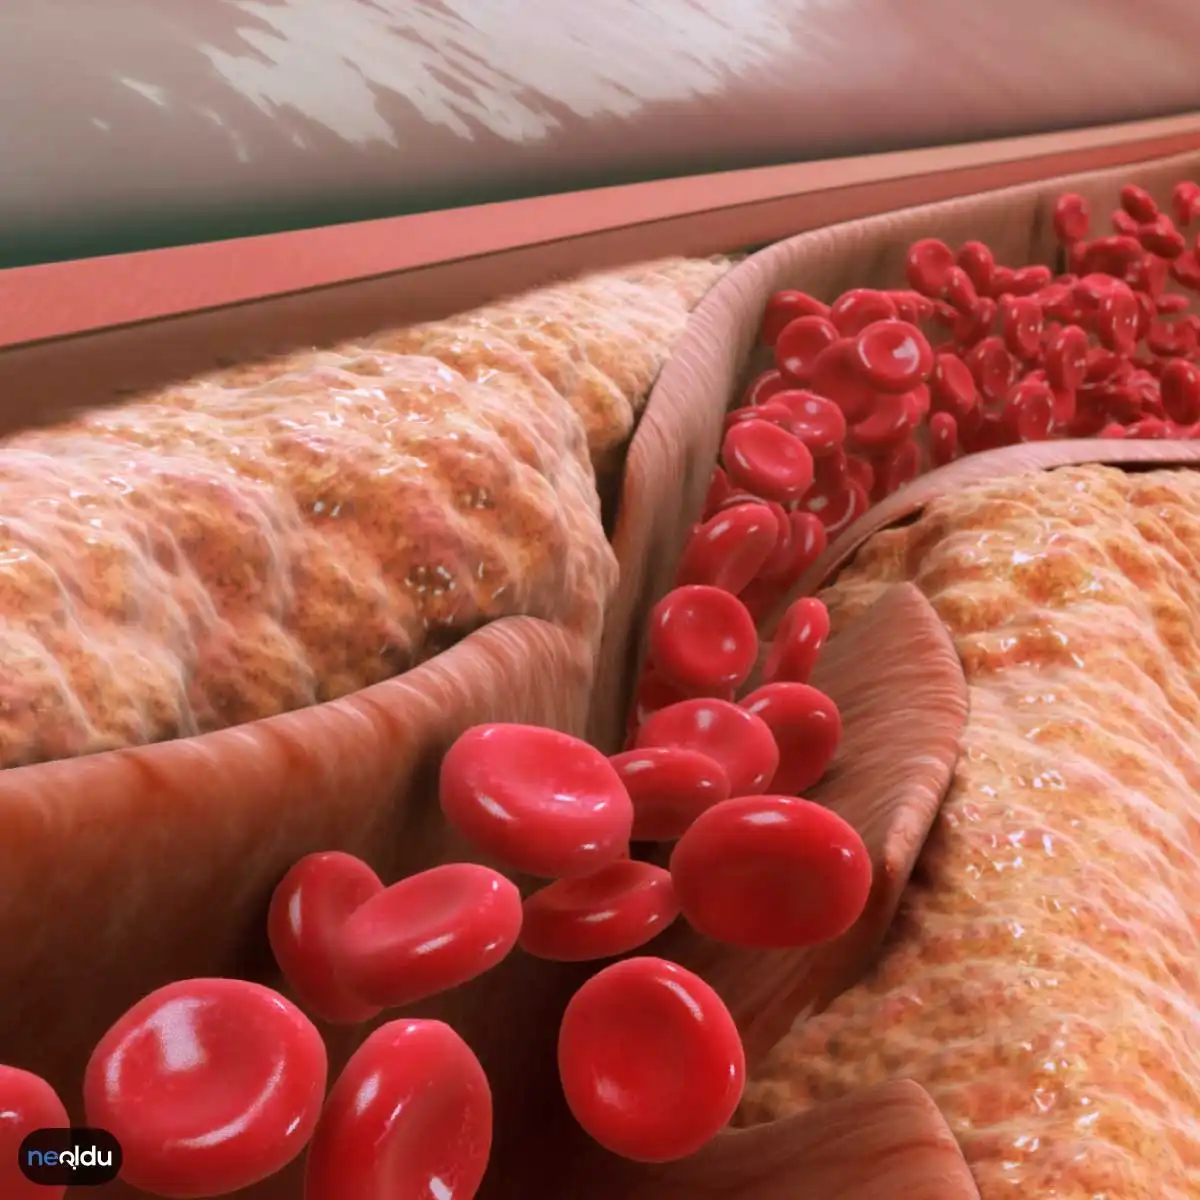 Kolesterol Nasıl Düşürülür? Yükselten ve Düşüren Besinler